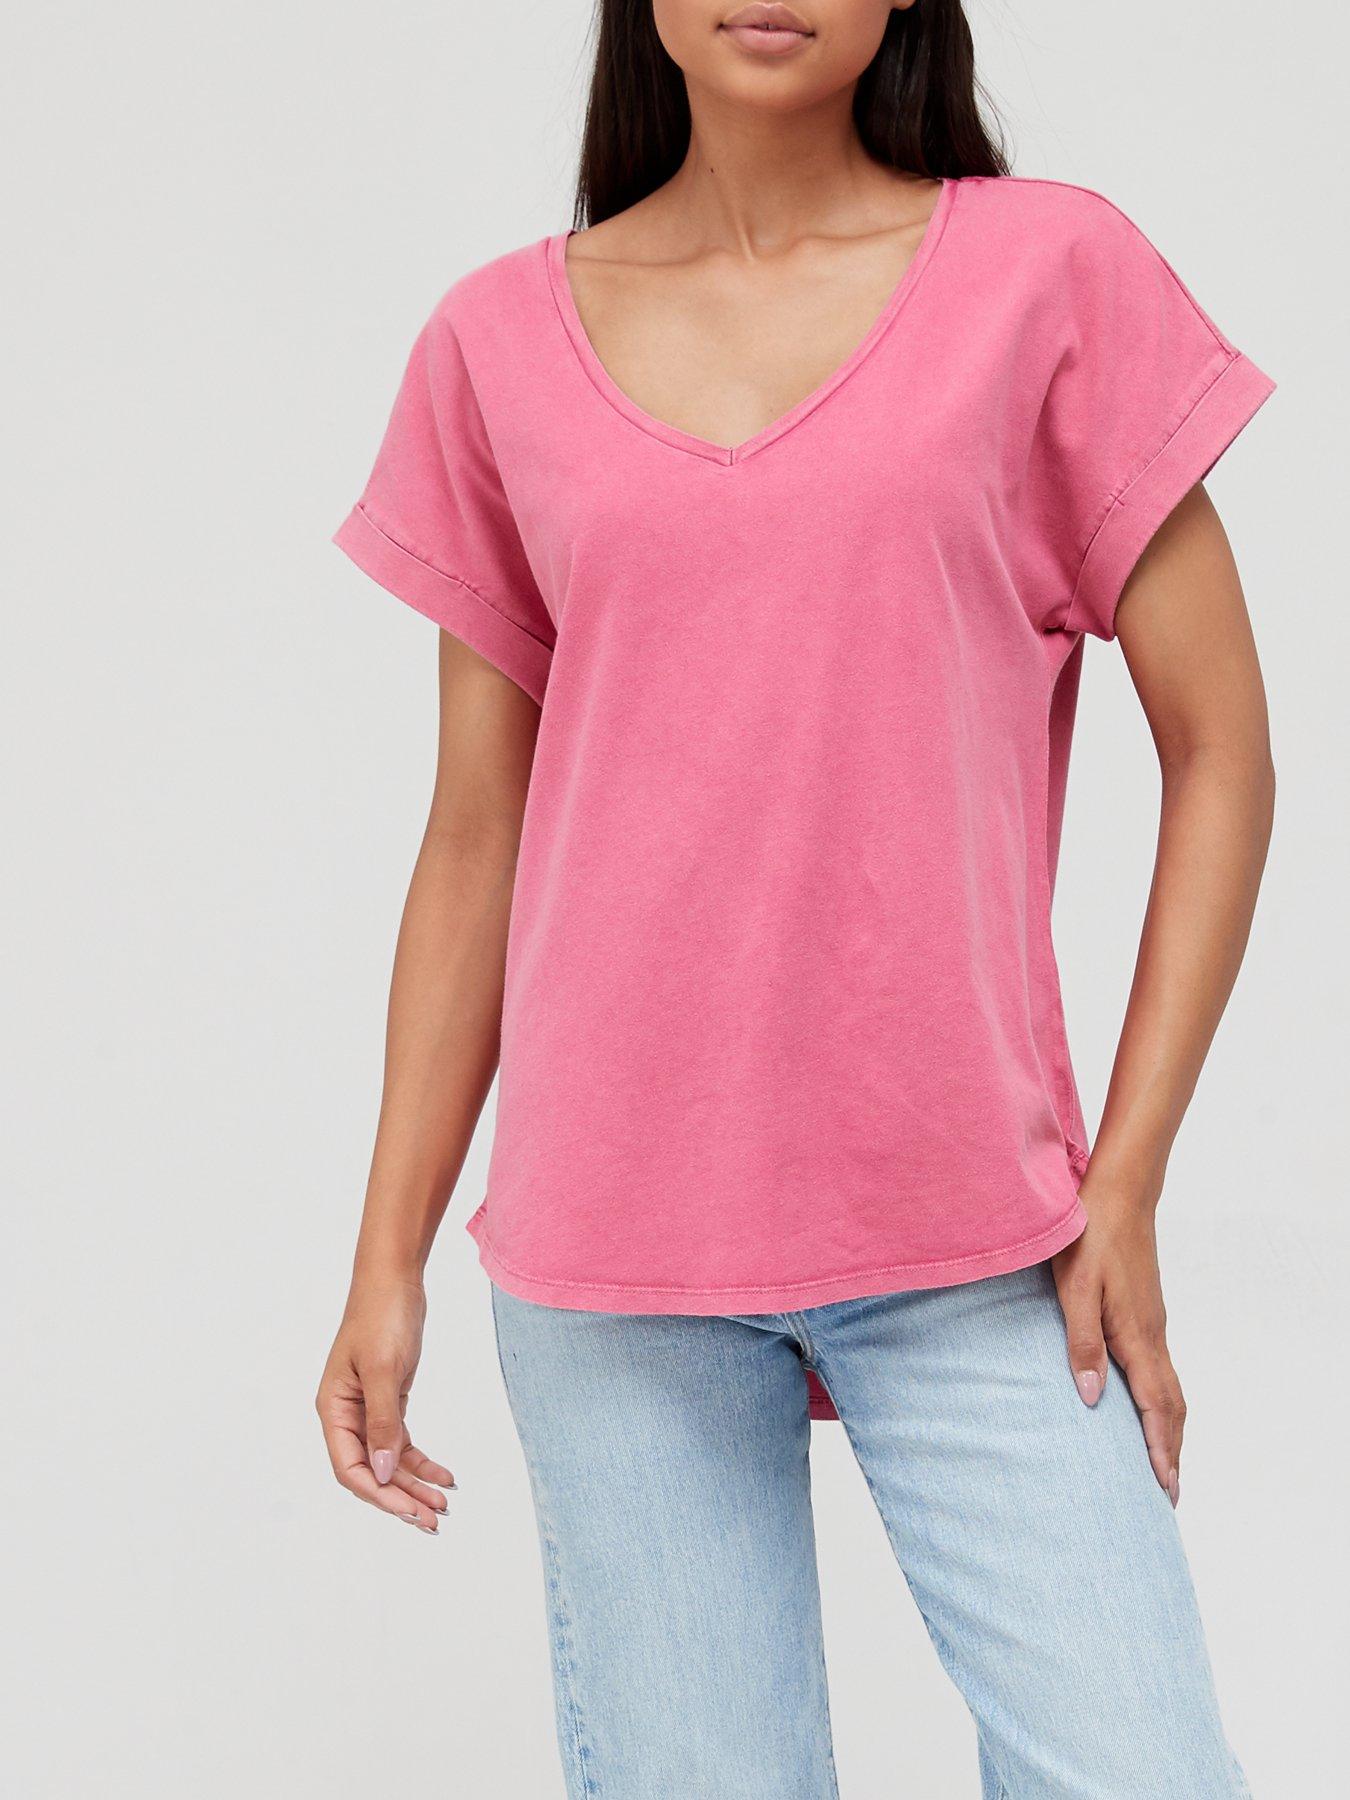 pink v neck t shirt